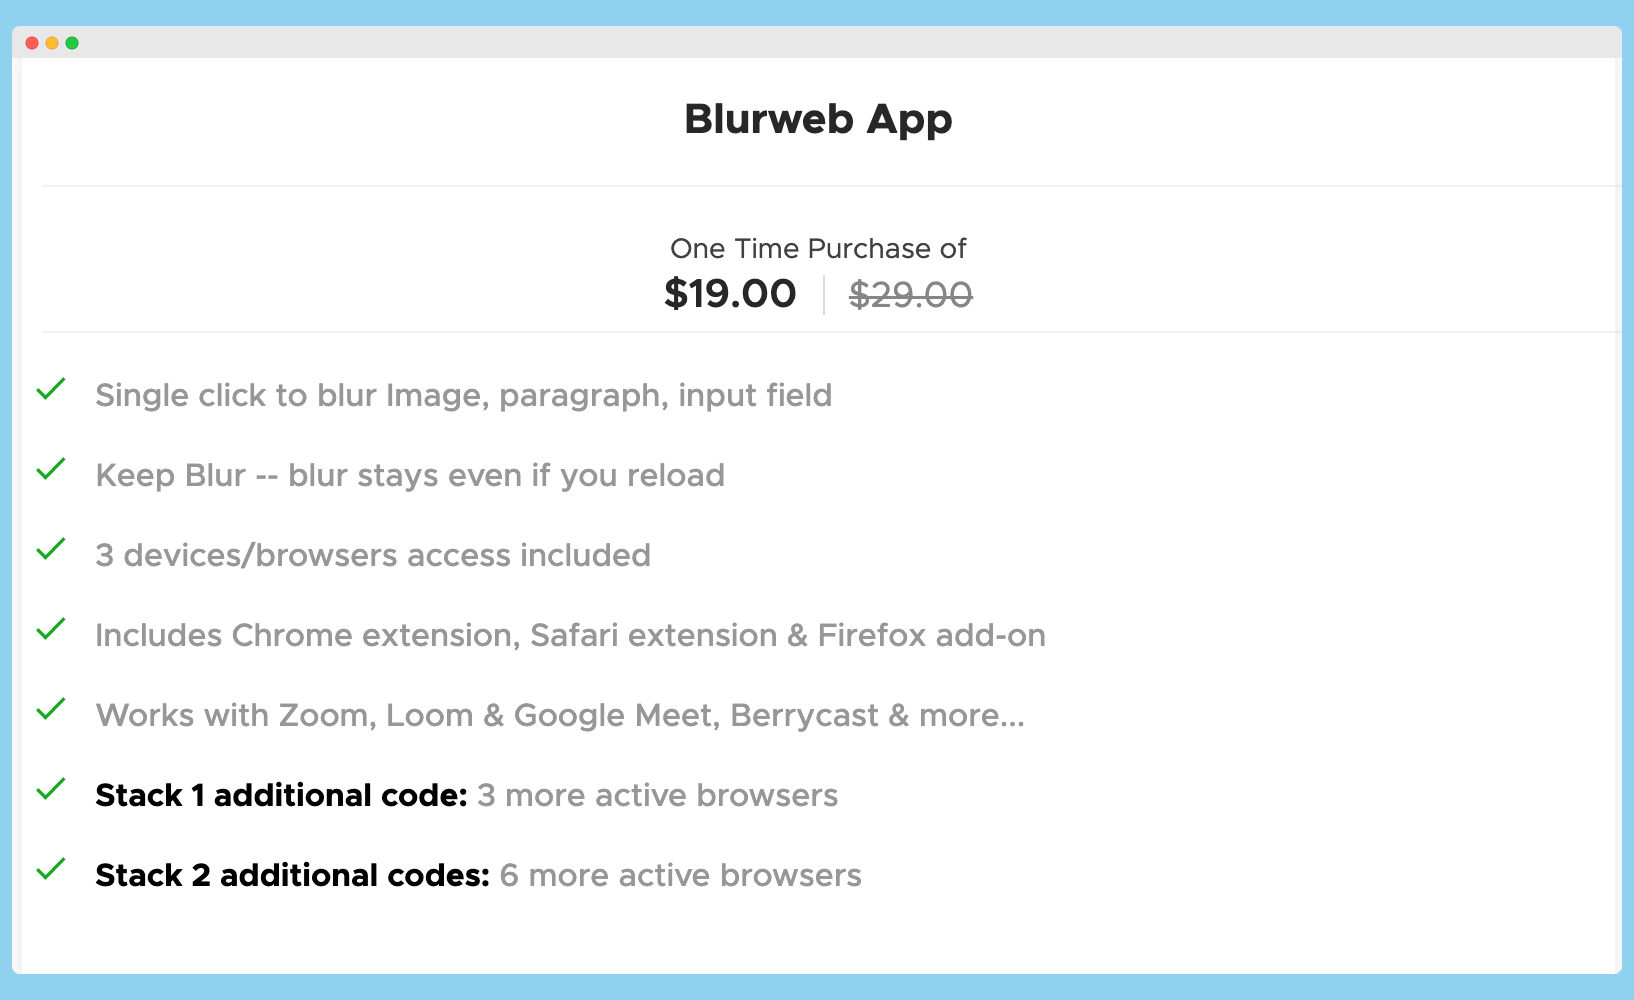 blurweb app, blurweb appsumo deal, blurweb lifetime deal, blurweb lifetime deal appsumo, blurweb ltd, blurweb ltd deal